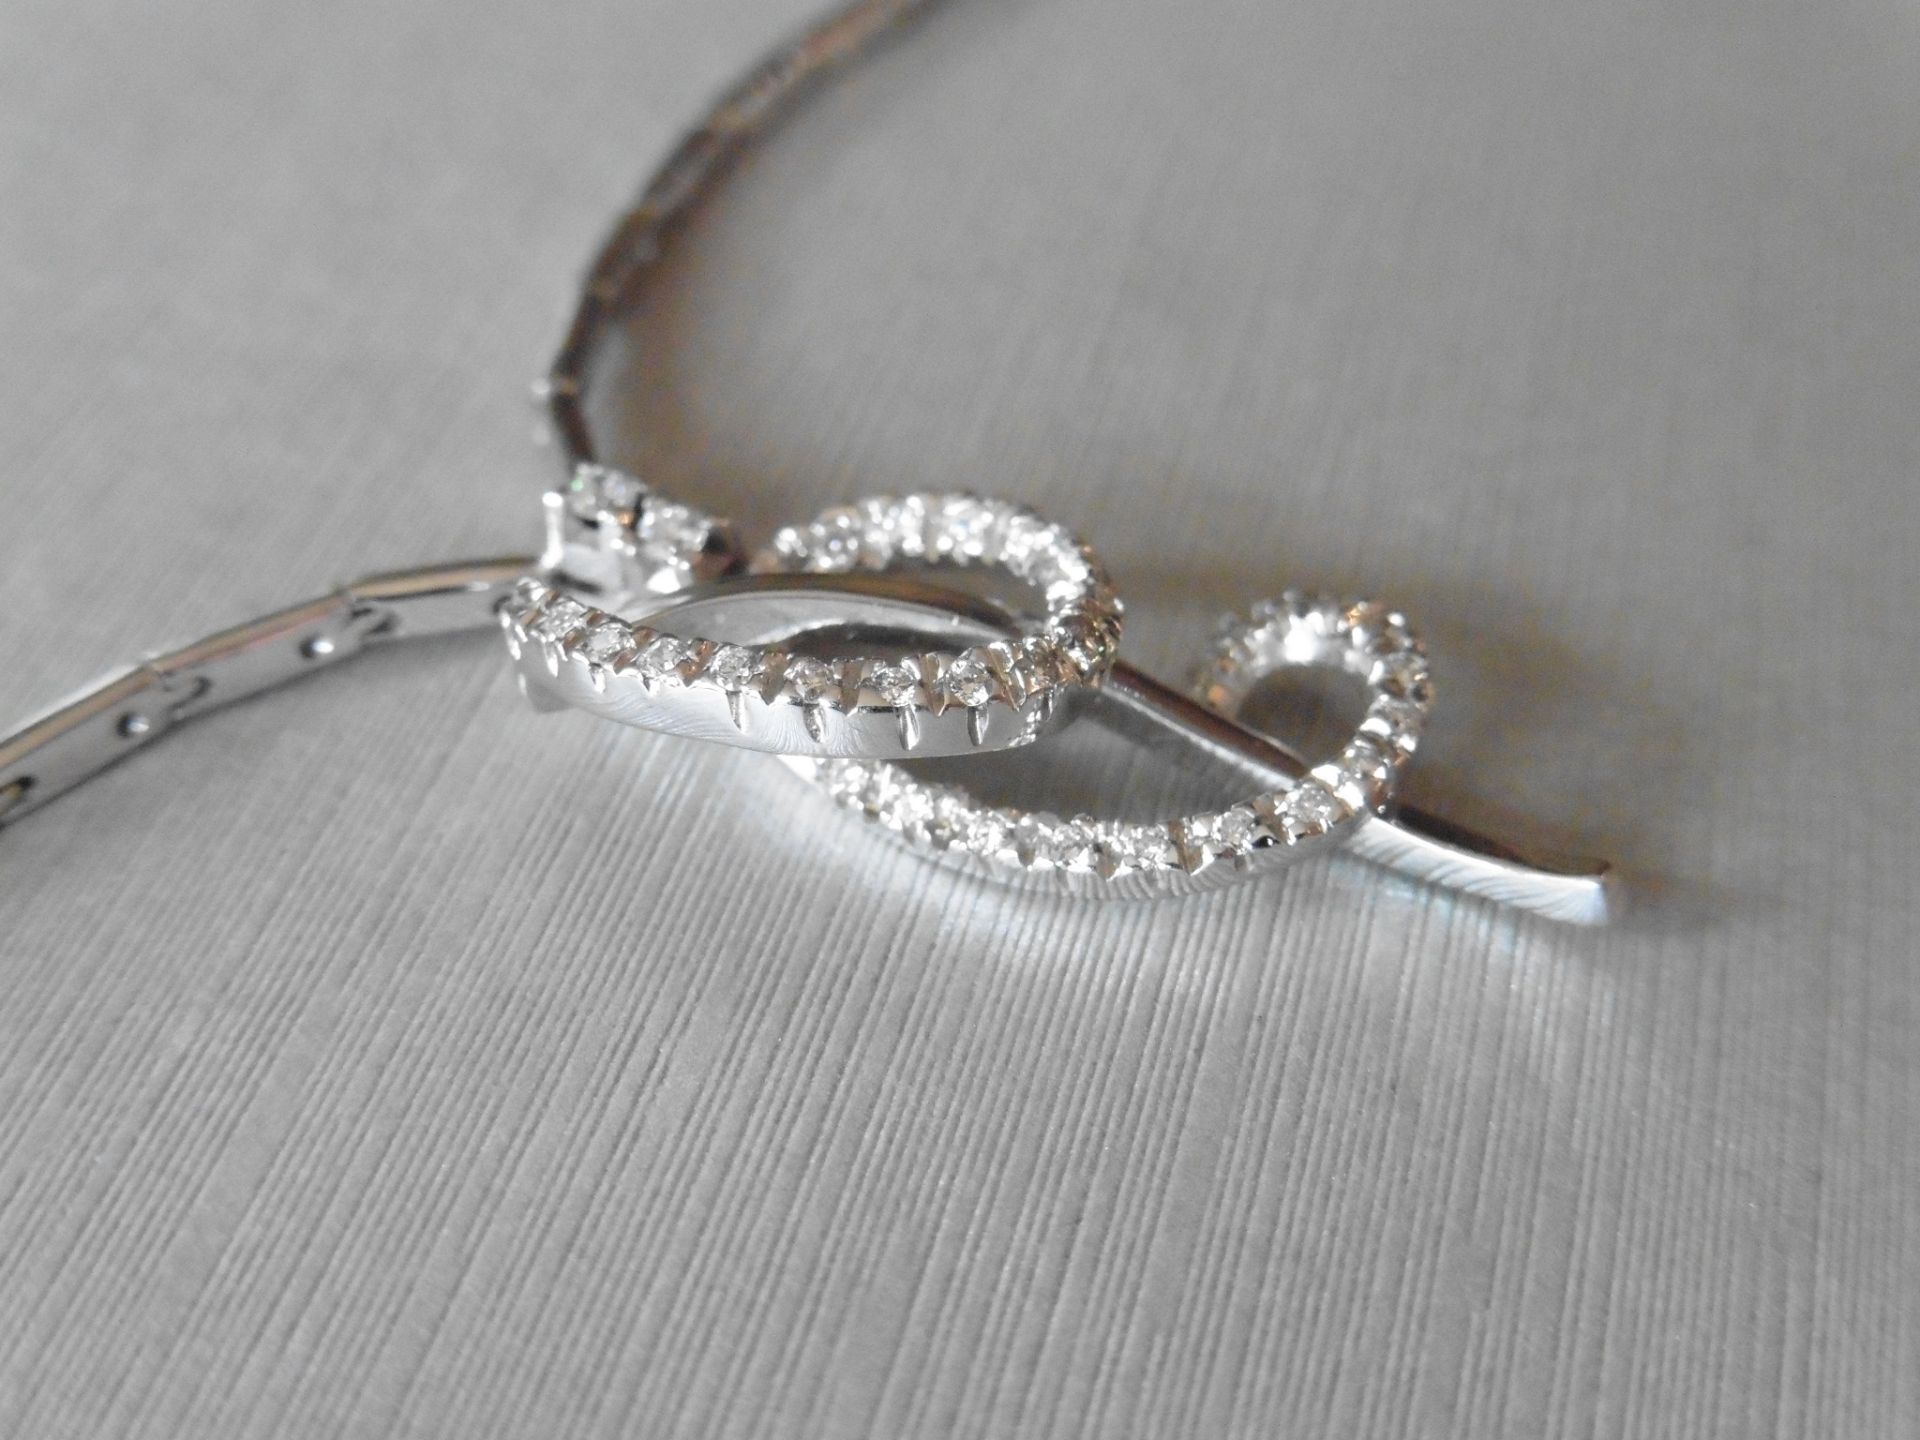 18ct white gold fancy diamond set pendant. Swirl design with small brilliant cut diamonds, H colour, - Image 2 of 6